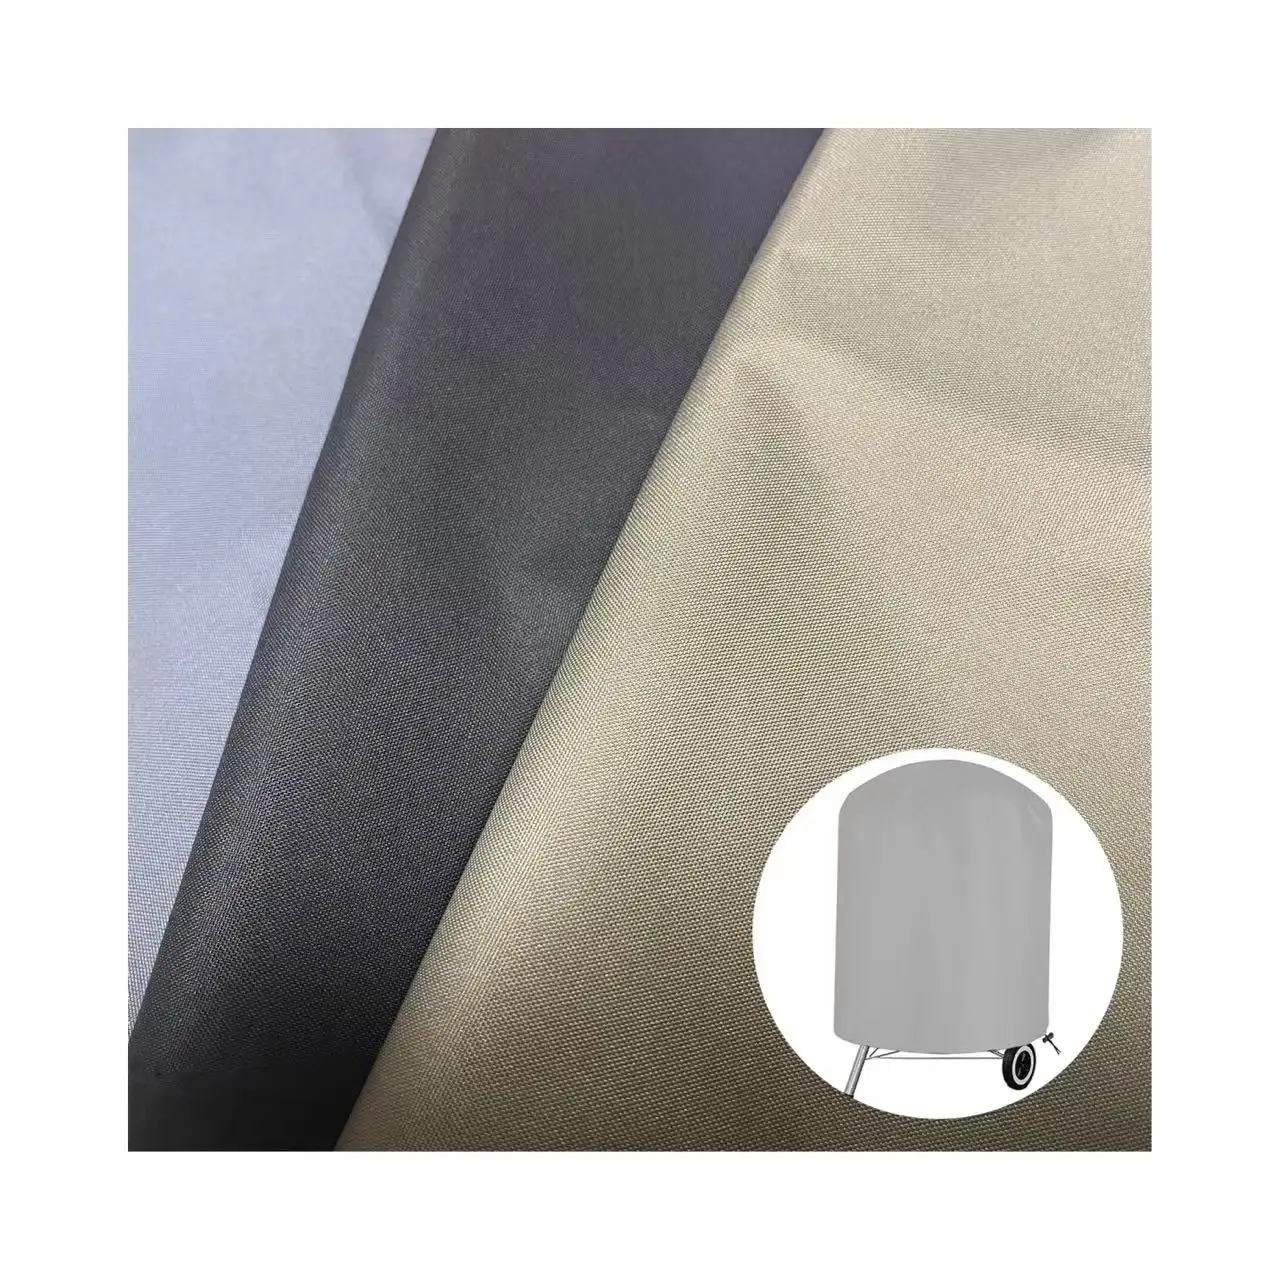 Kualitas tinggi 100% kain poliester PVC dilapisi tahan air anti-uv kain luar ruangan untuk penutup sofa/penutup oven